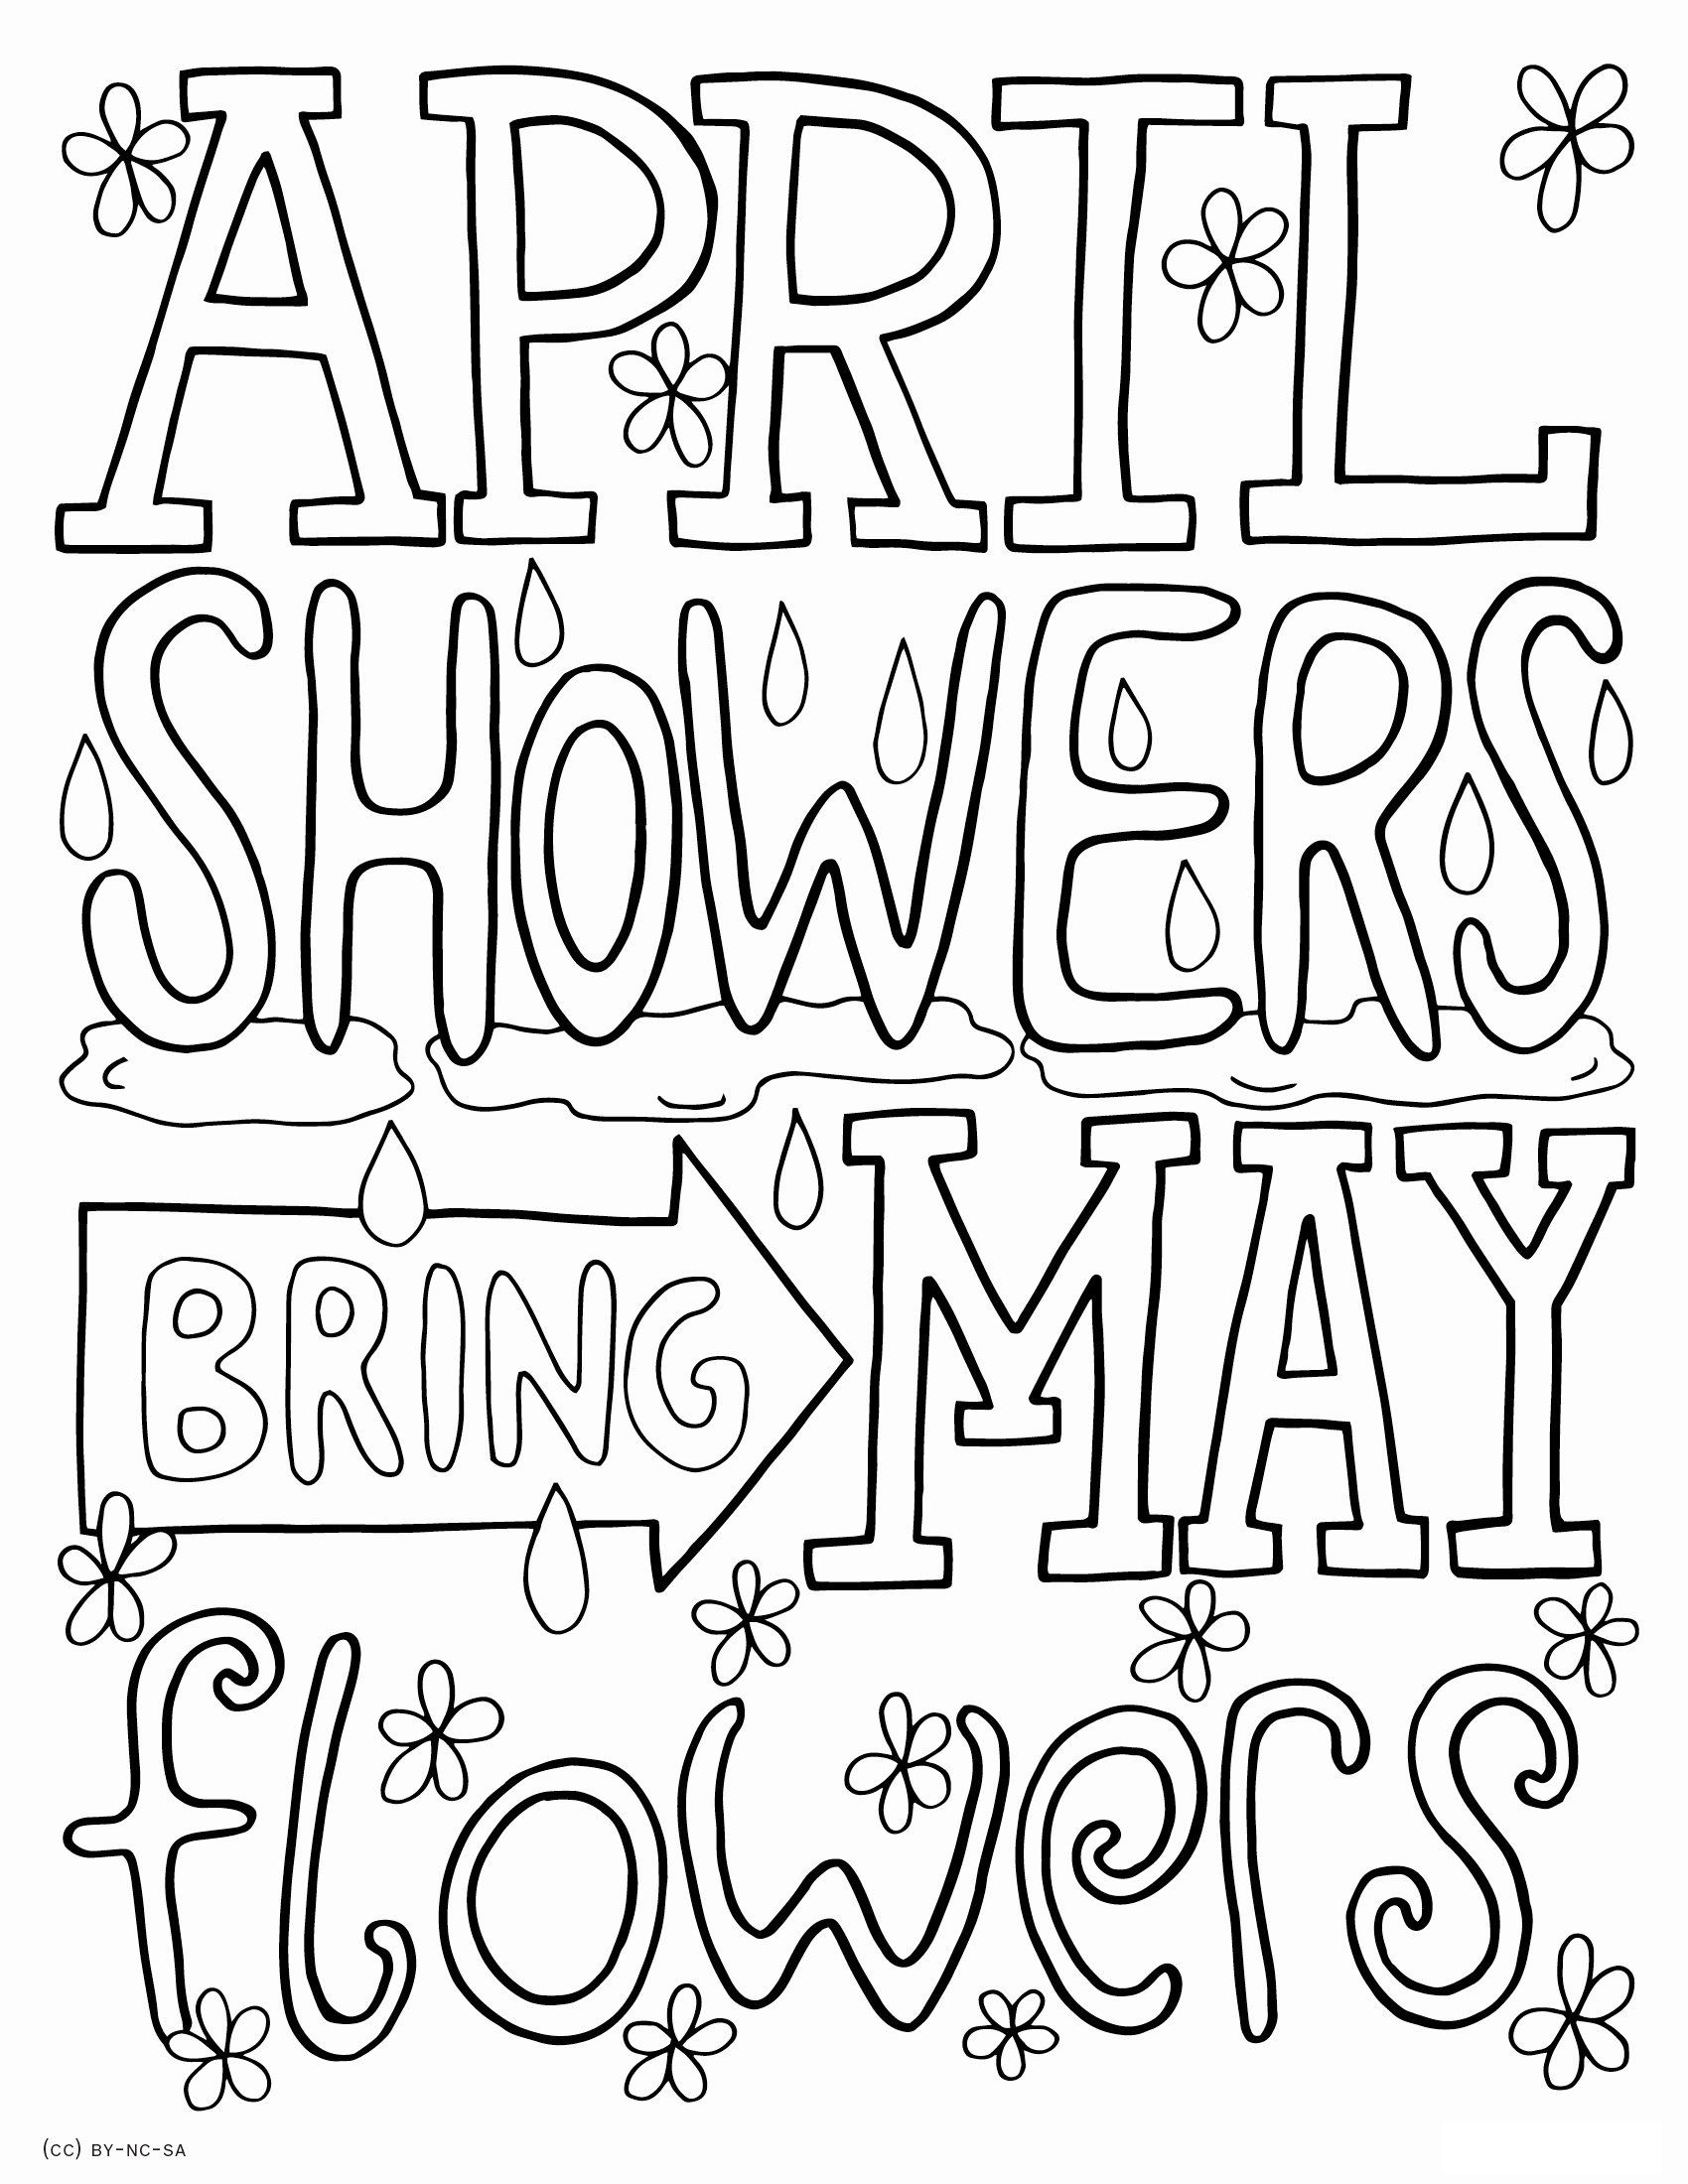 April Showers Coloring Pages Free Pdf - April Showers Coloring Pages